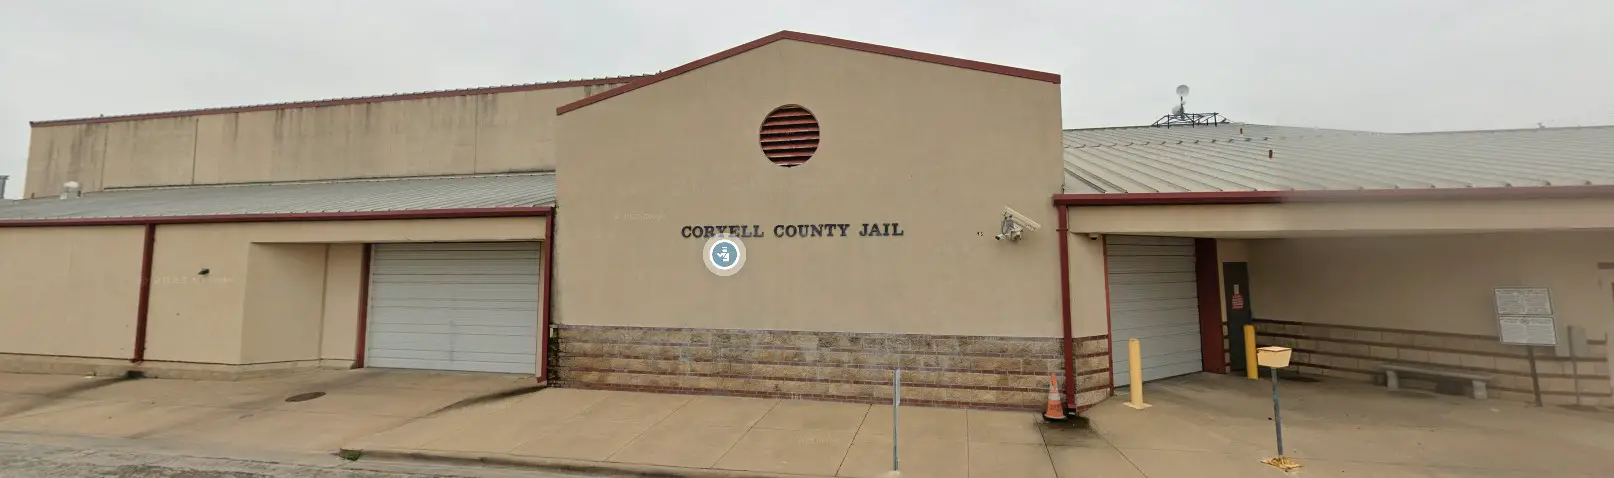 Photos Coryell County Jail 1